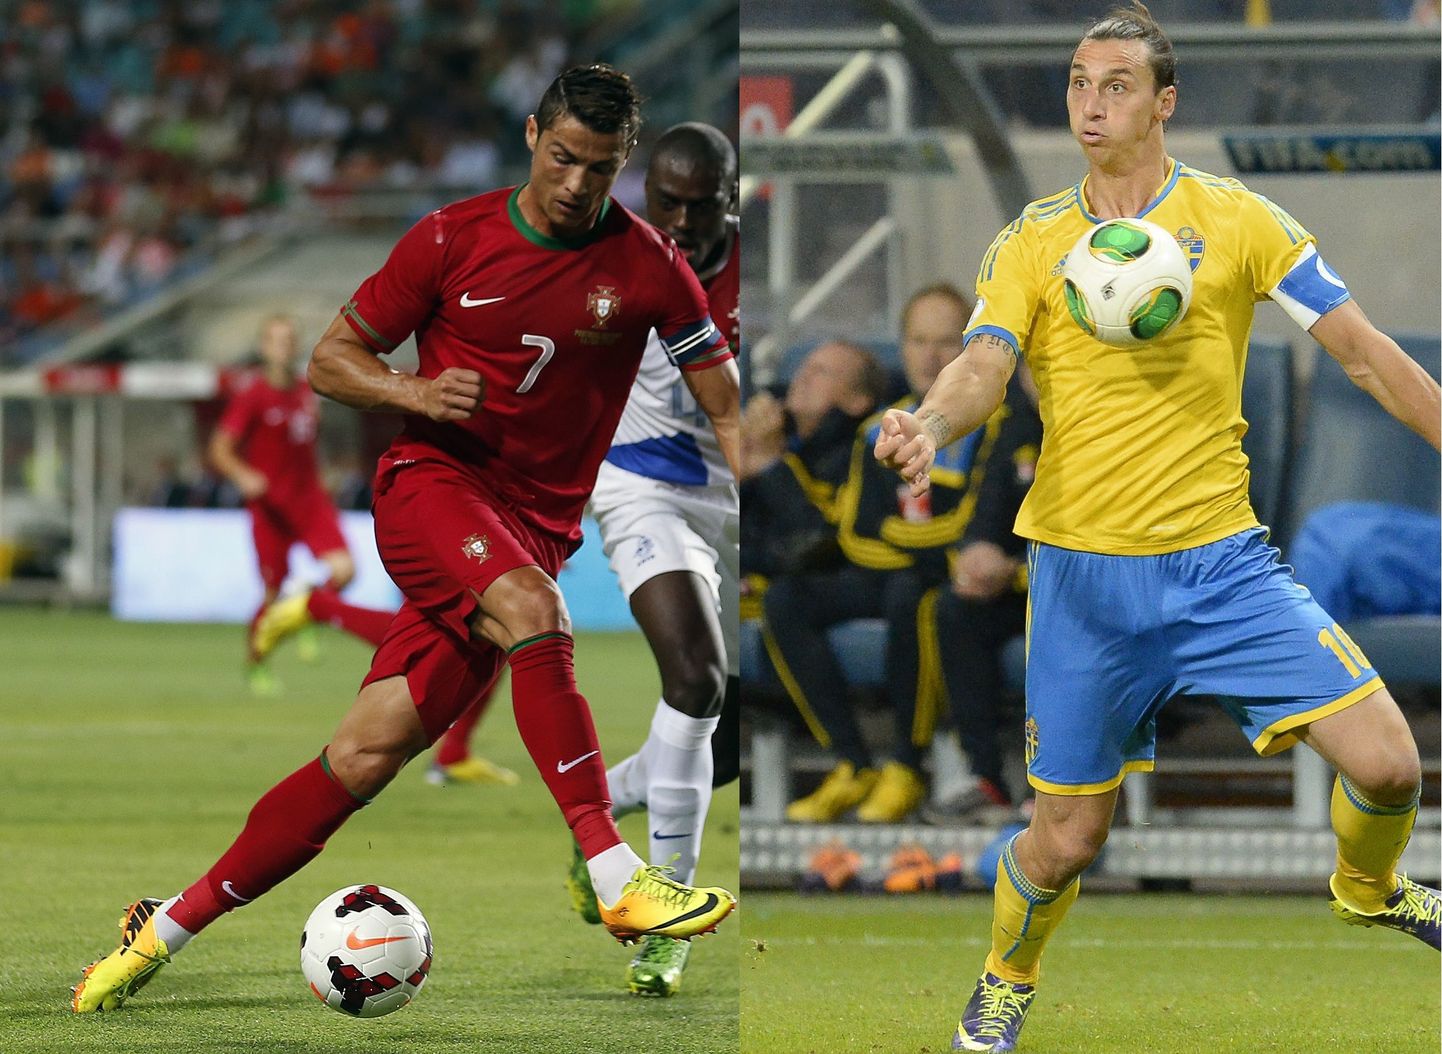 Большой интерес вызывает противостояние форварда португальцев Криштиану Роналду (слева)и нападающего сборной Швеции Златана Ибрагимовича.